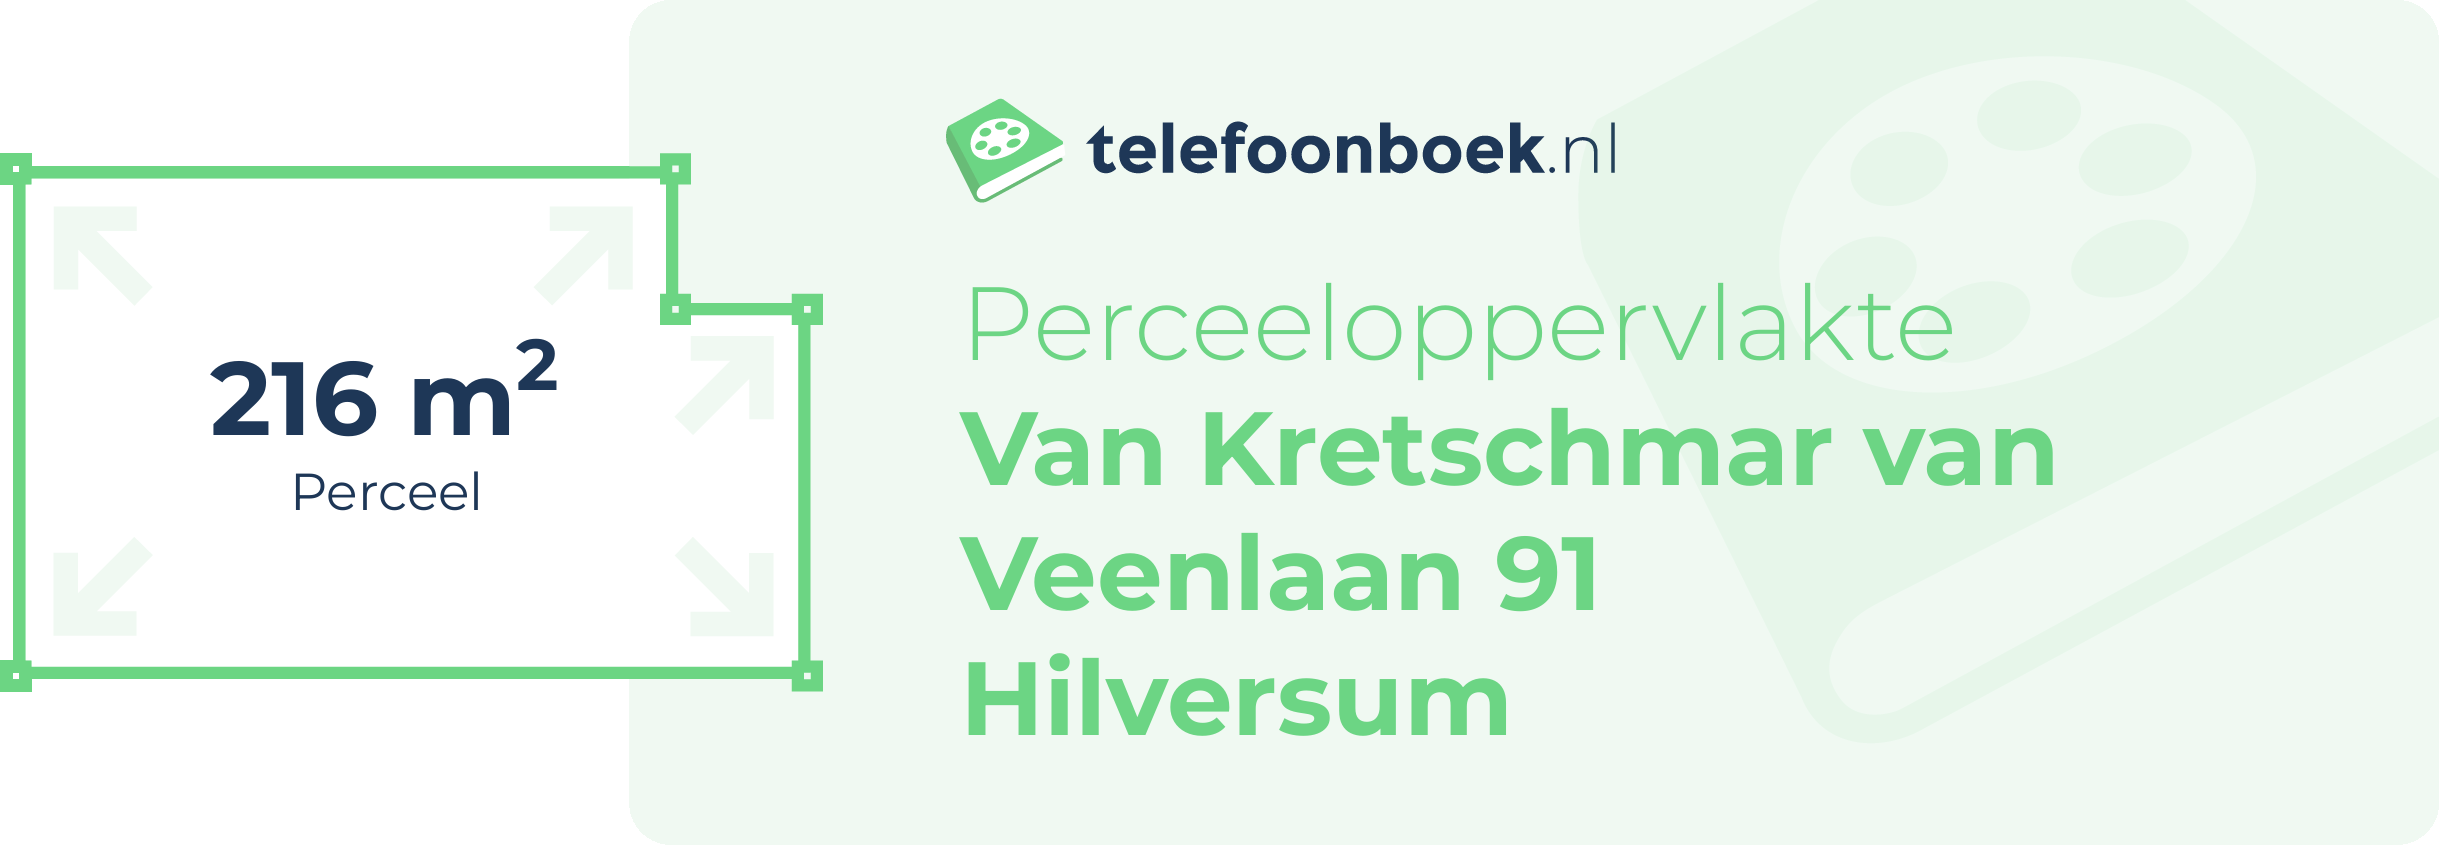 Perceeloppervlakte Van Kretschmar Van Veenlaan 91 Hilversum